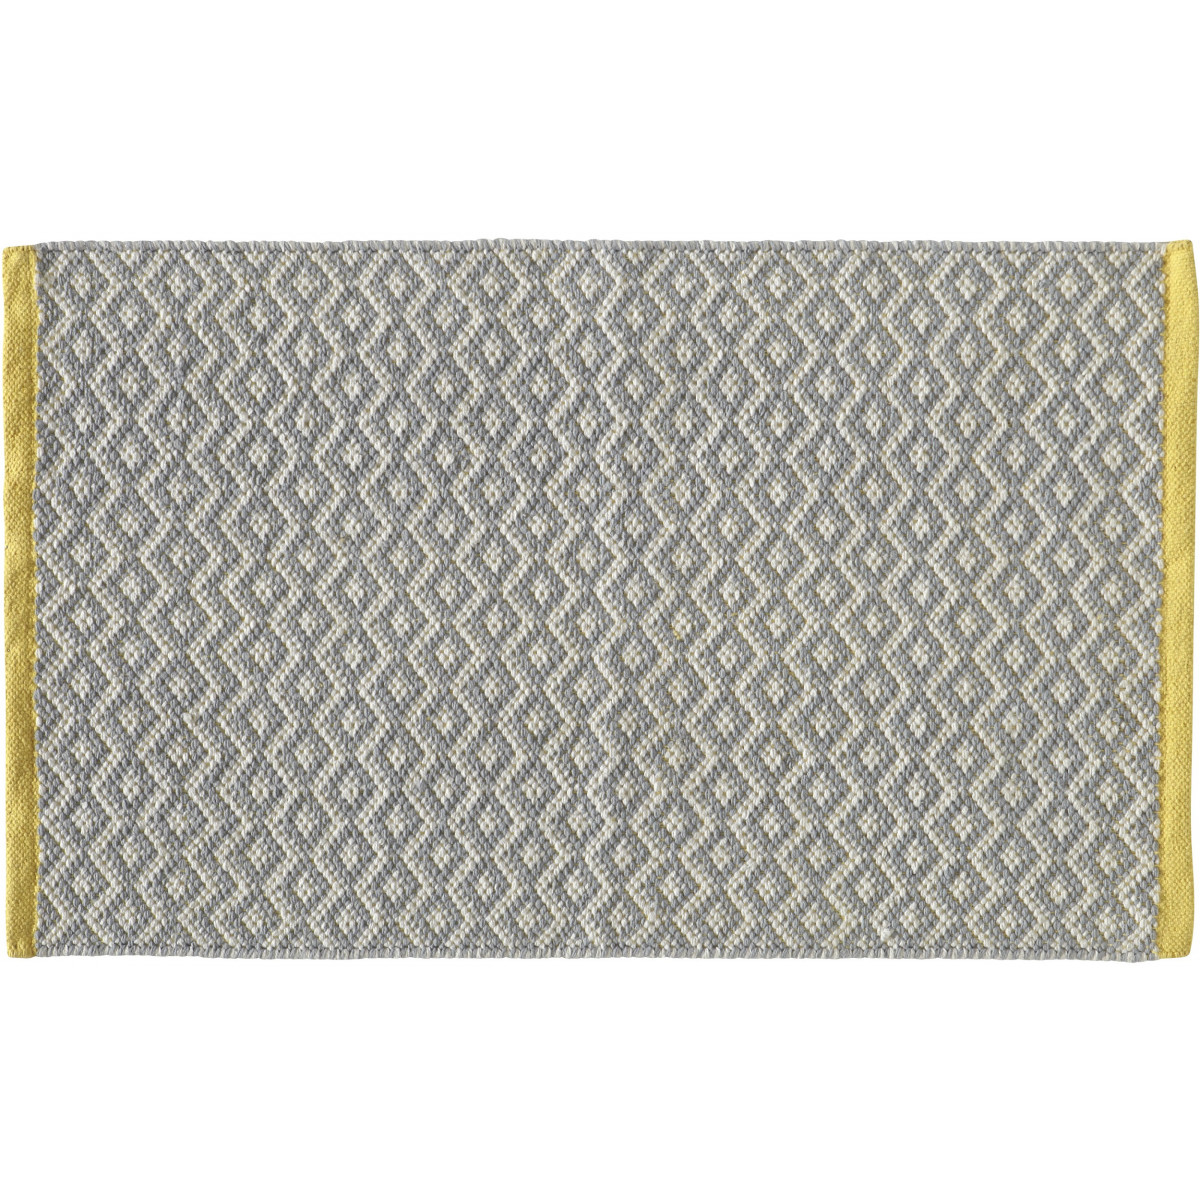 tapis de bain en polyester fantaisie gris et jaune 50x120cm